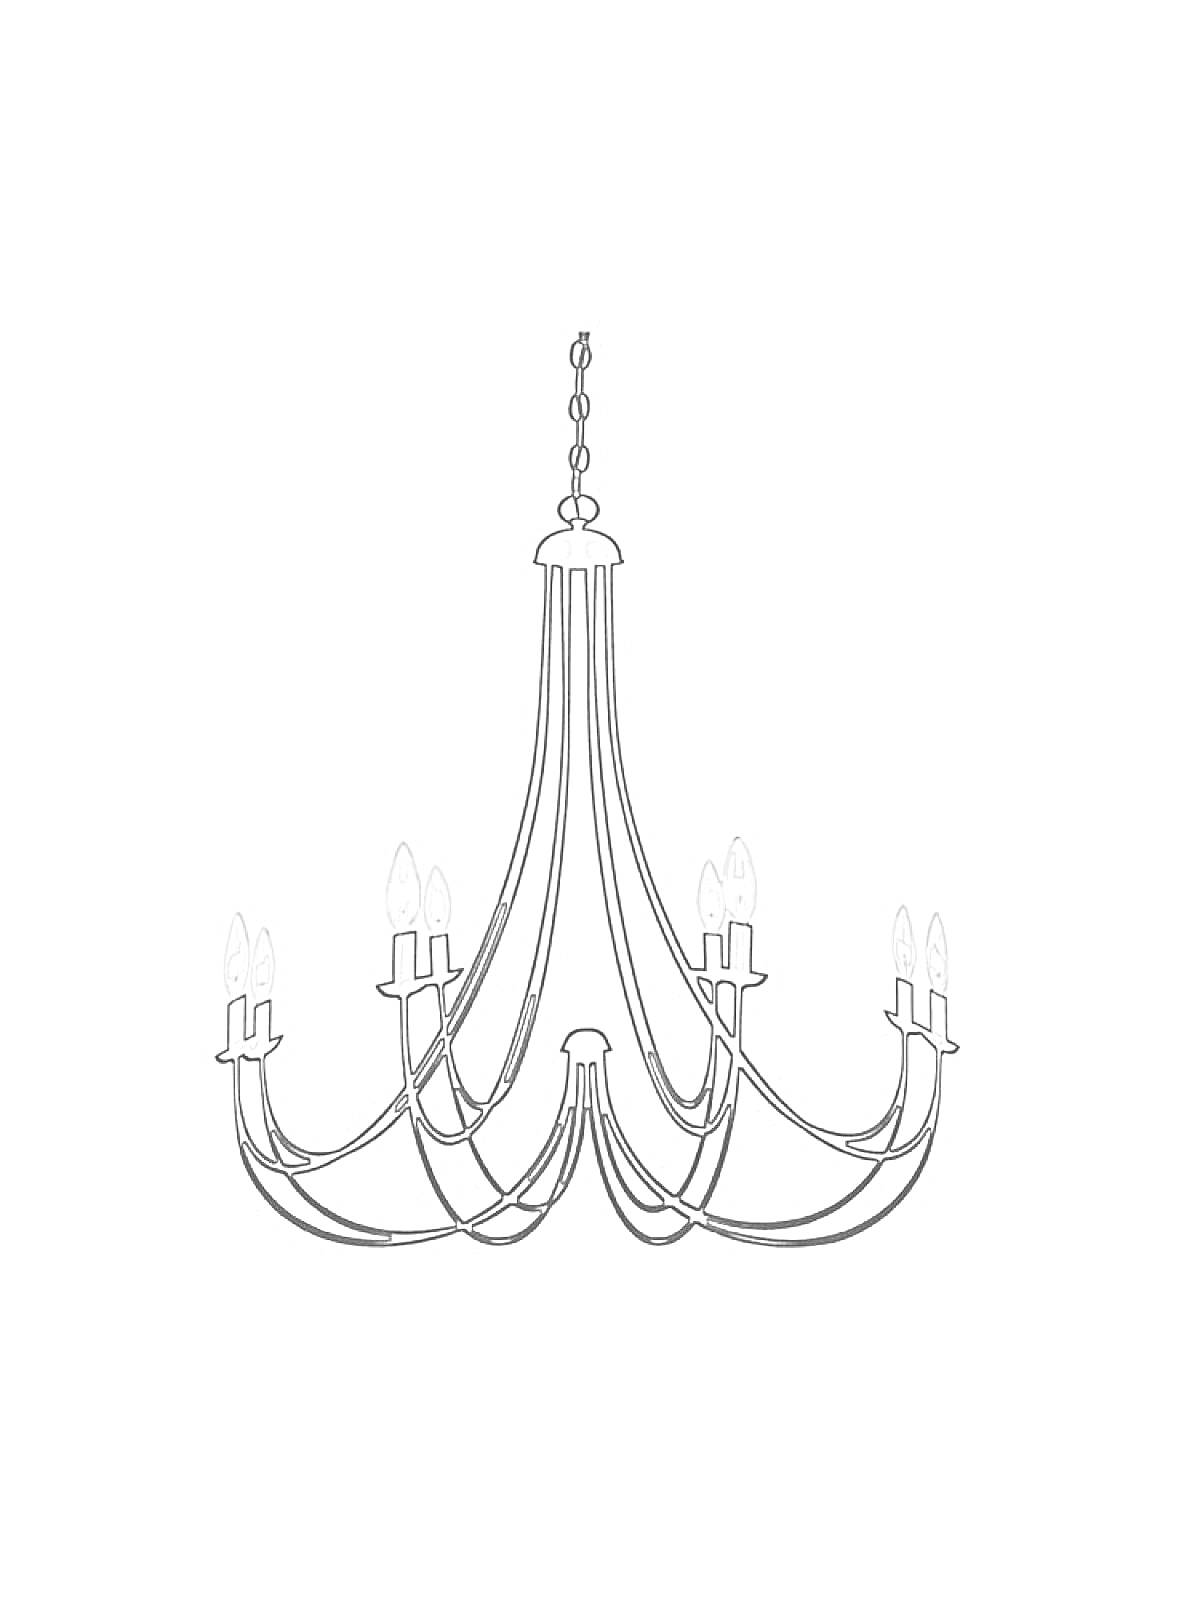 Раскраска Люстра с восьмью лампами на восьми изогнутых держателях, соединённых цепью на верхушке